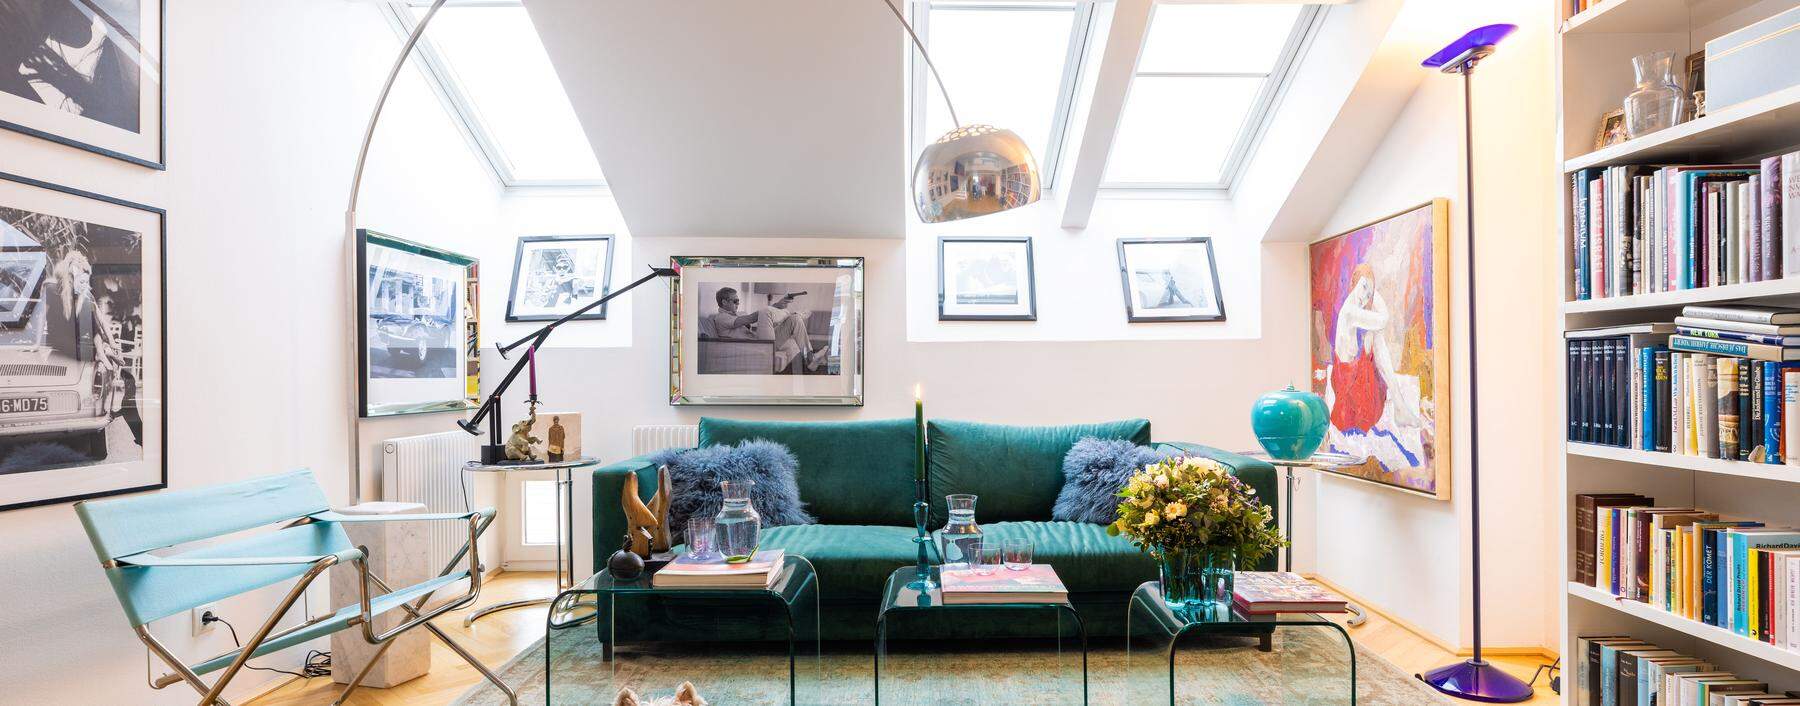 Großer Raum, kleiner Piti: Der West Highland Terrier bewacht Fotos, Gemälde, Lampen und das „mutige“ grüne Sofa. 